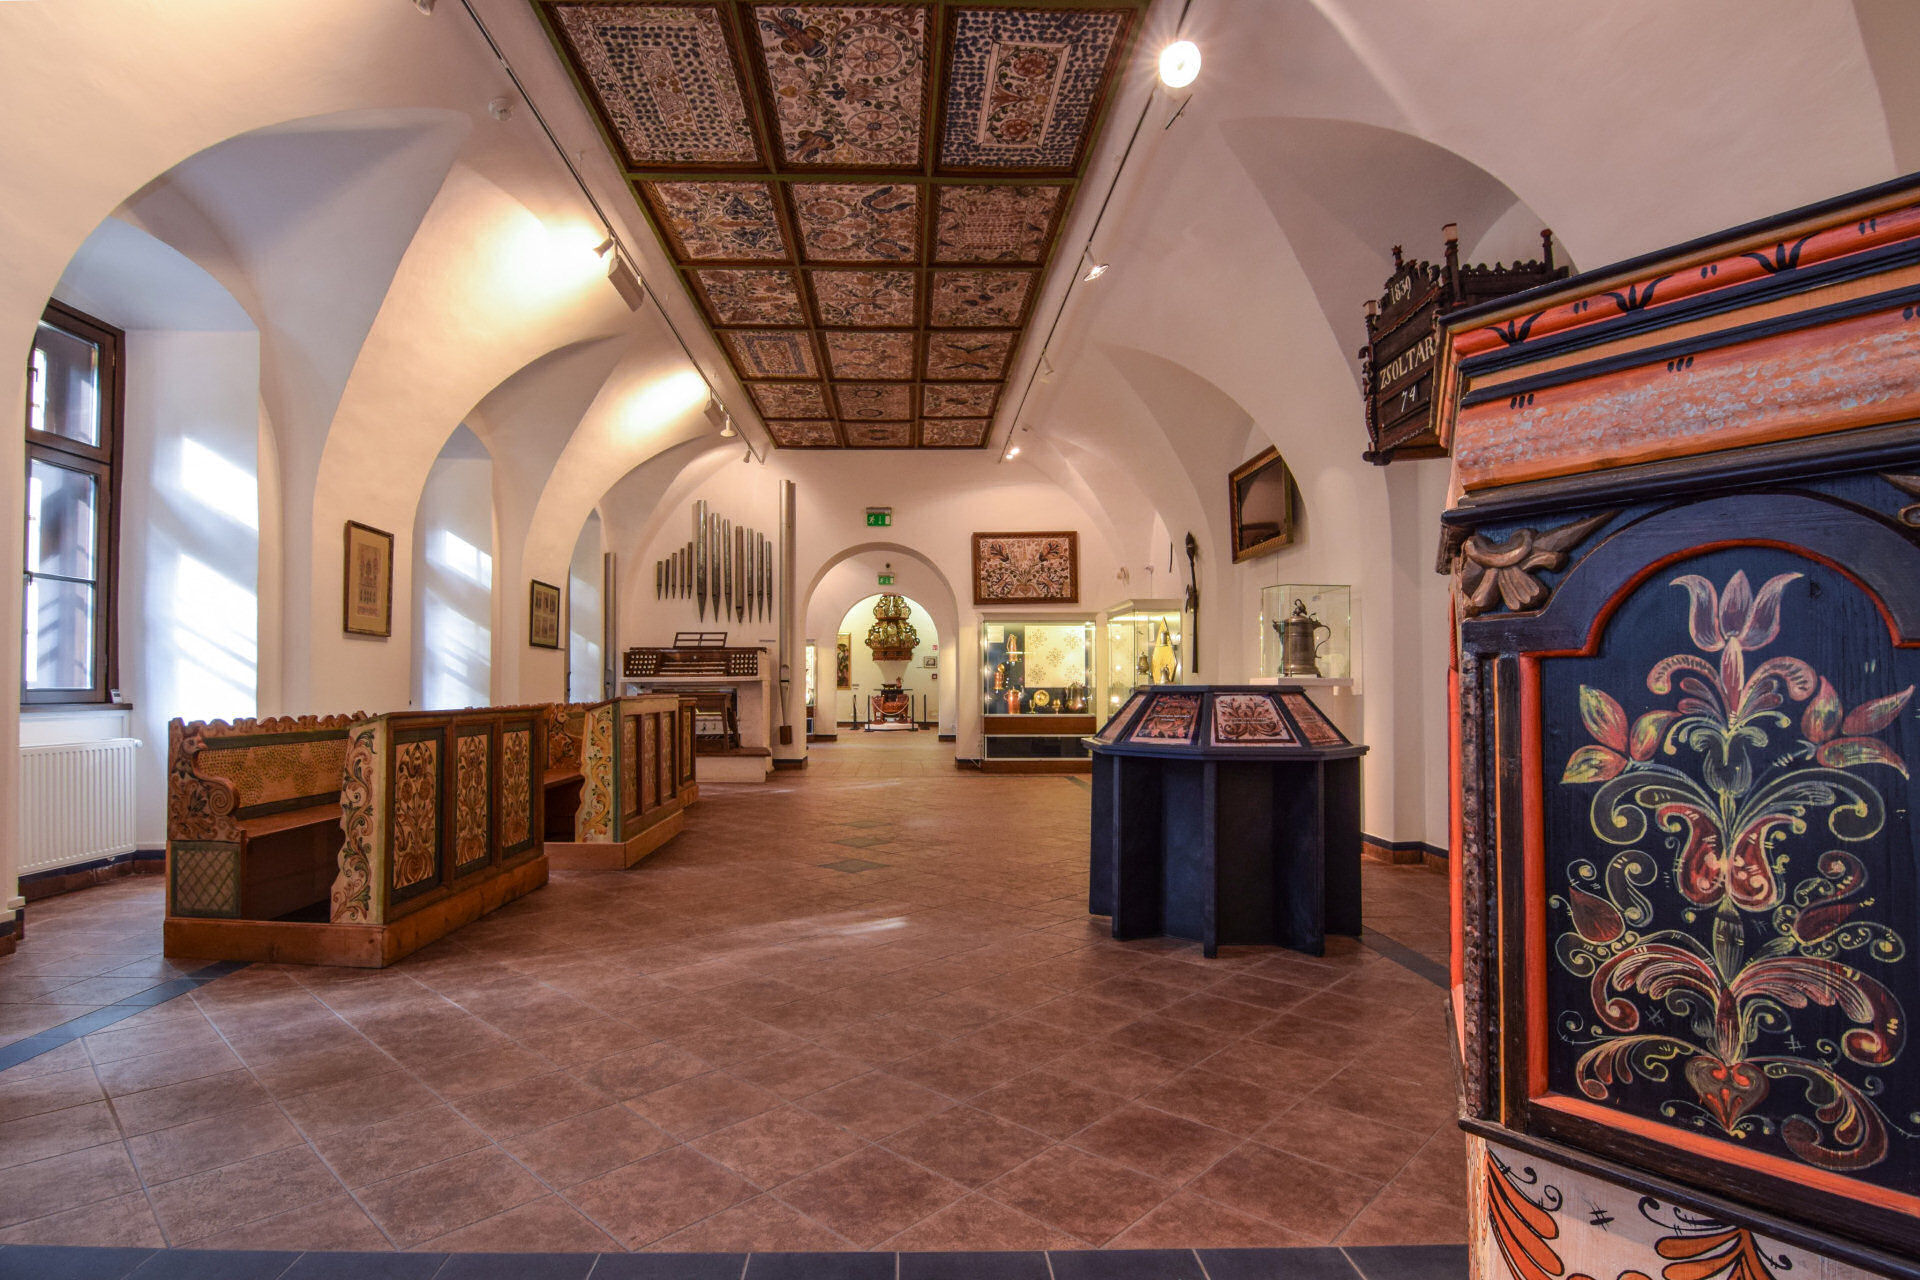 Exhibition of Ecclesiastical Art